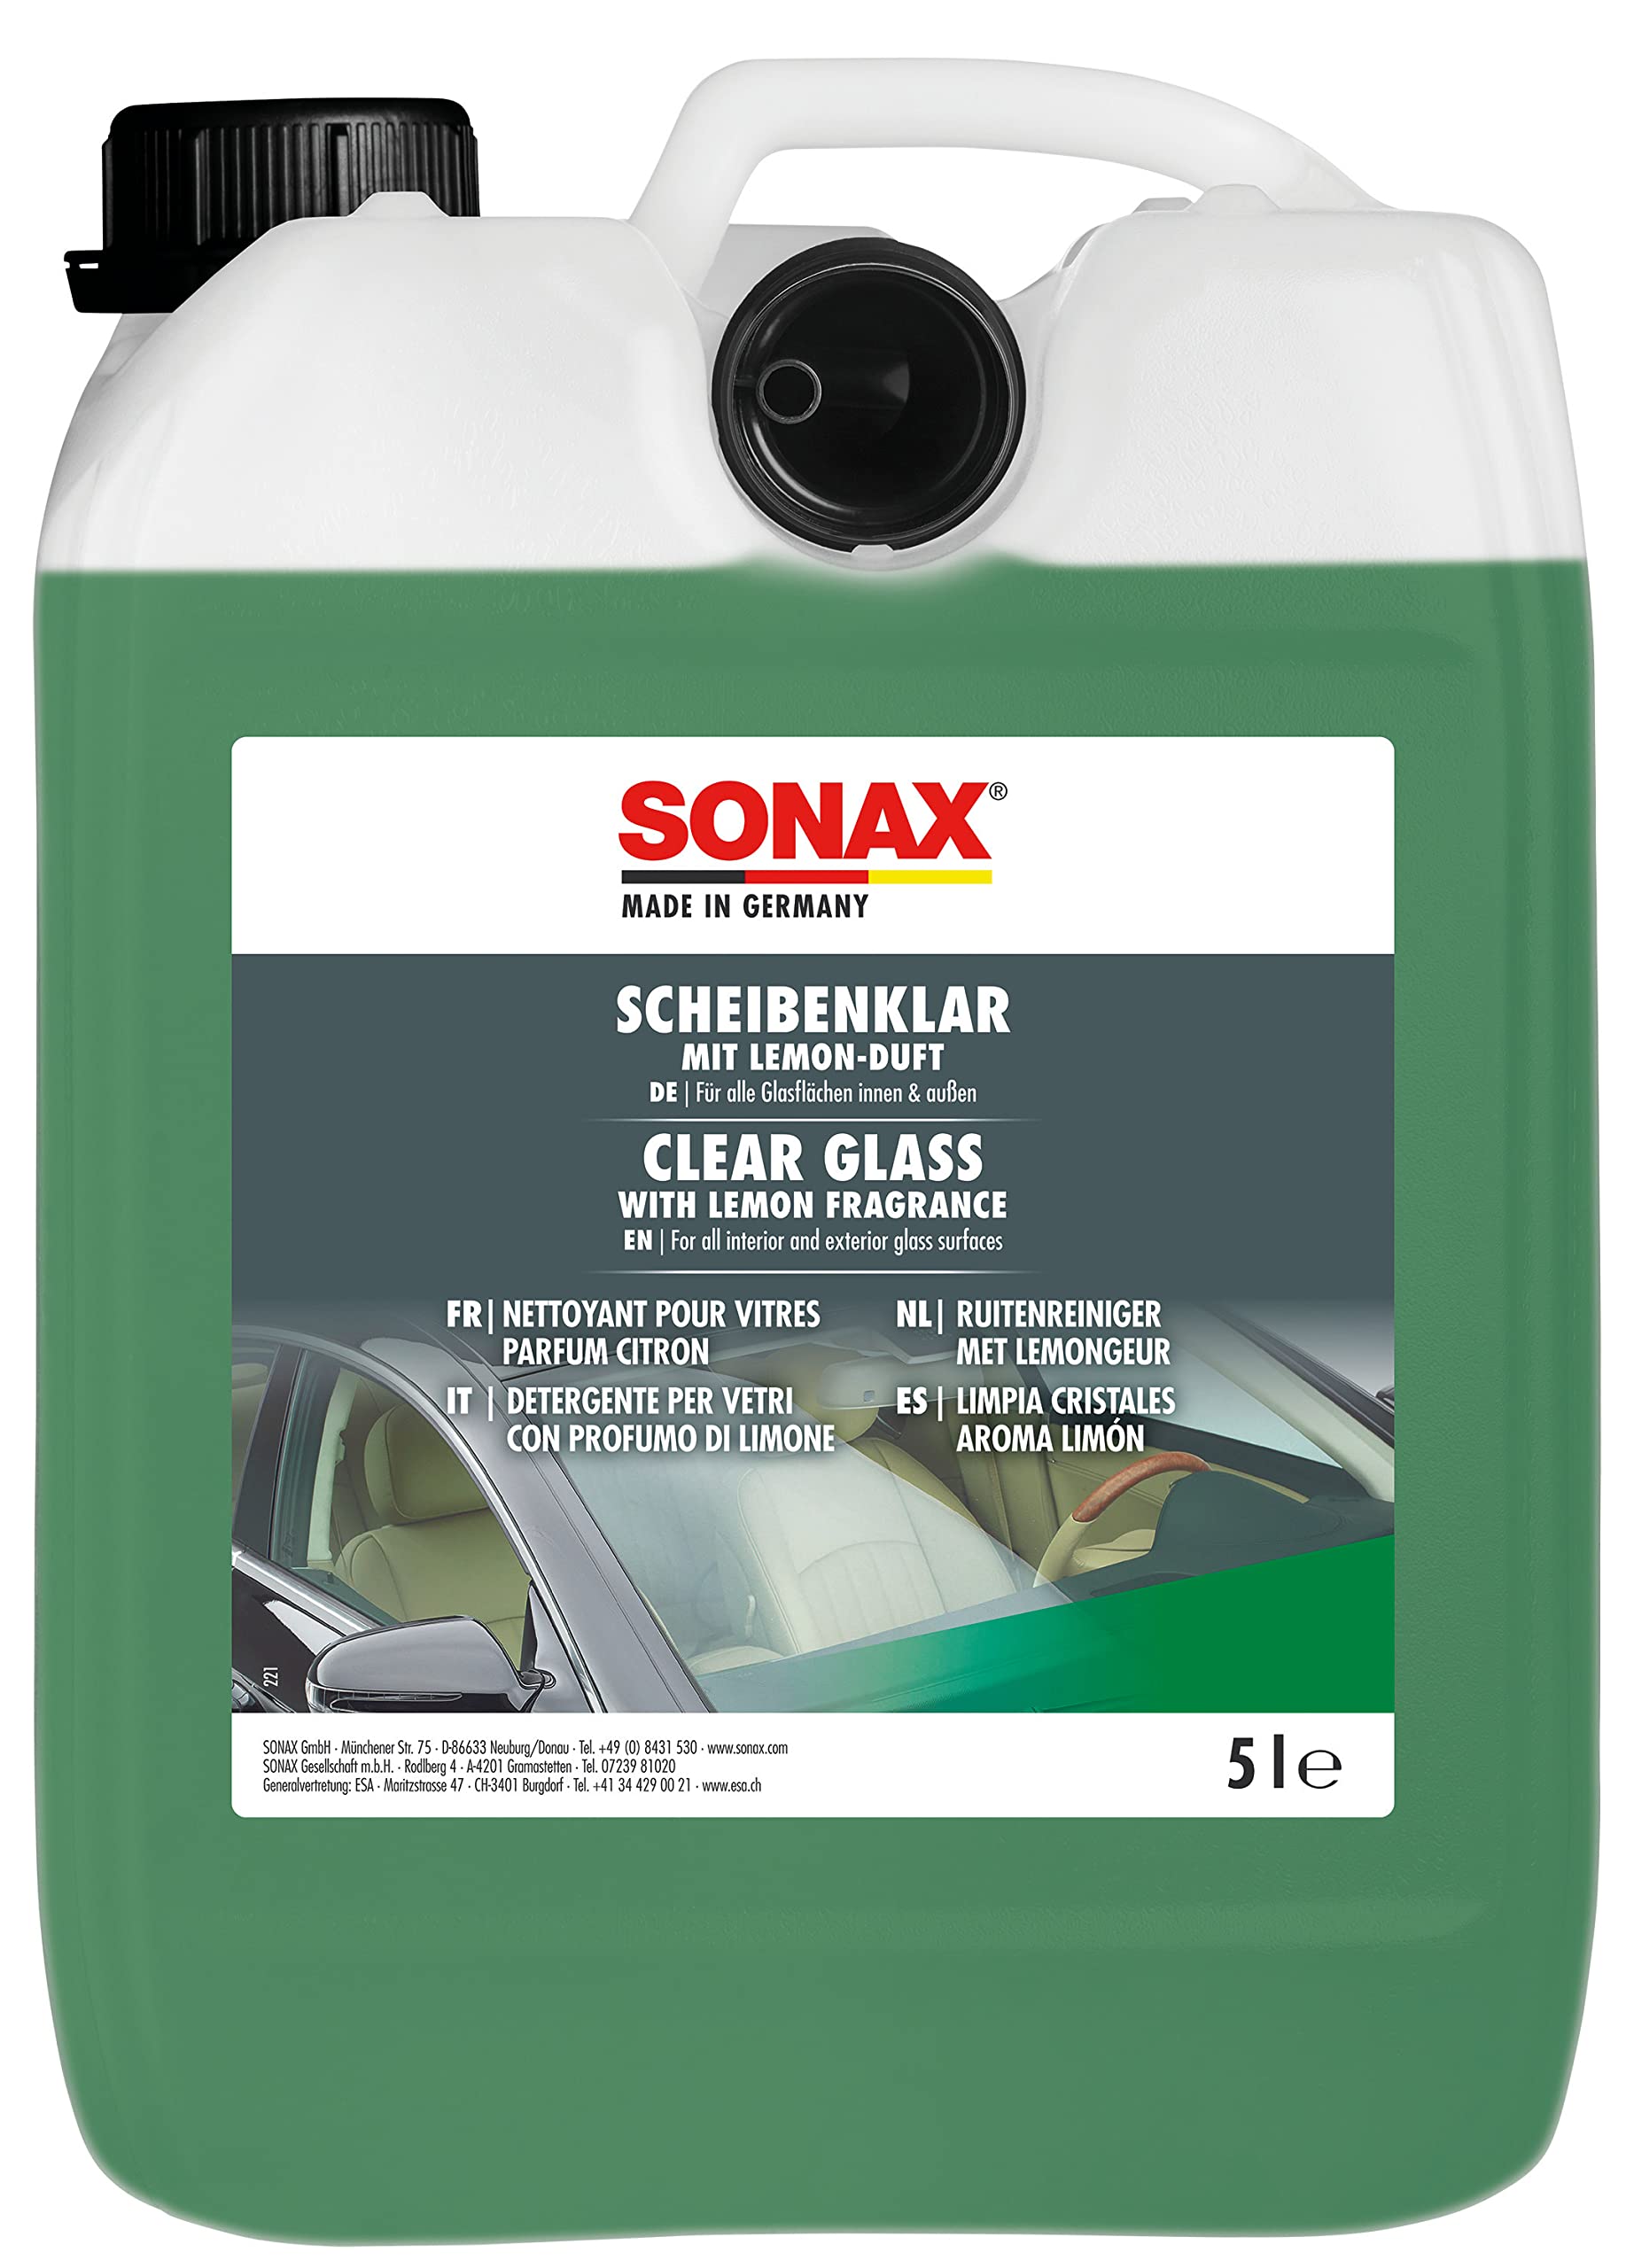 SONAX ScheibenKlar (5 Liter) Scheibenreiniger zum Entfernen von Silikon-, Öl- und Insektenverschmutzungen von Fahrzeugscheiben und Scheinwerfern | Art-Nr. 03385050 von SONAX